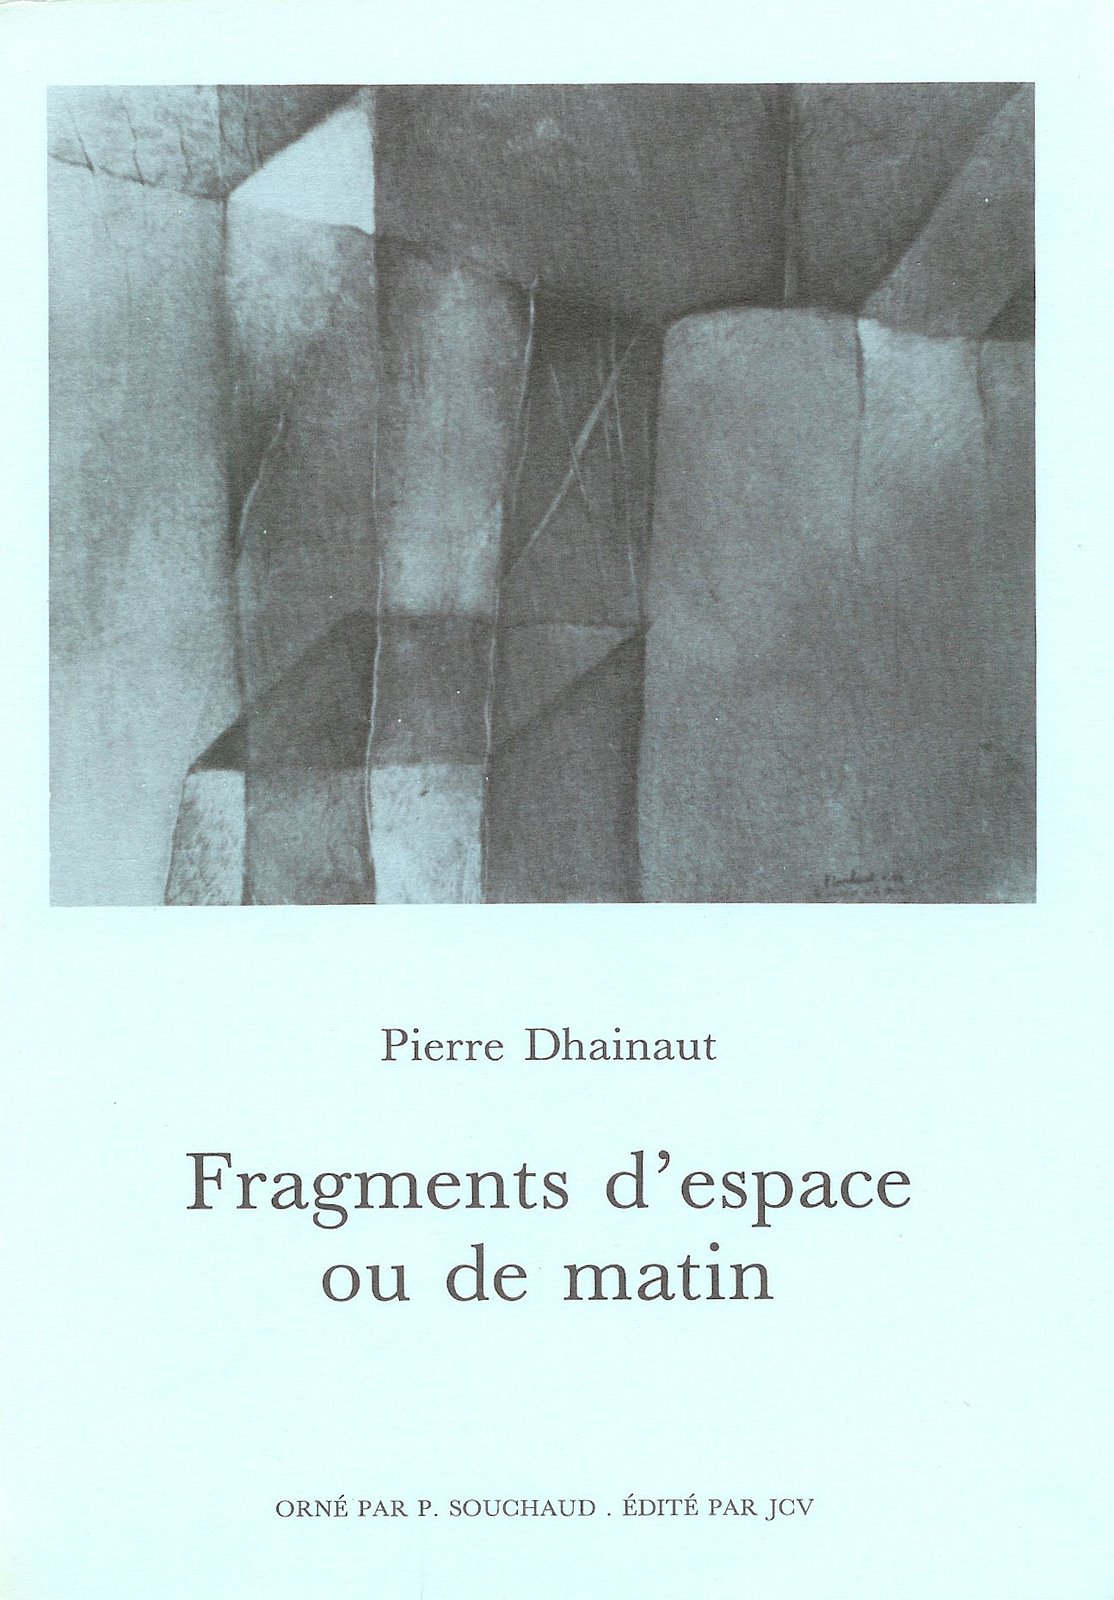 [fragments+d'espace+dhainaut.jpg]